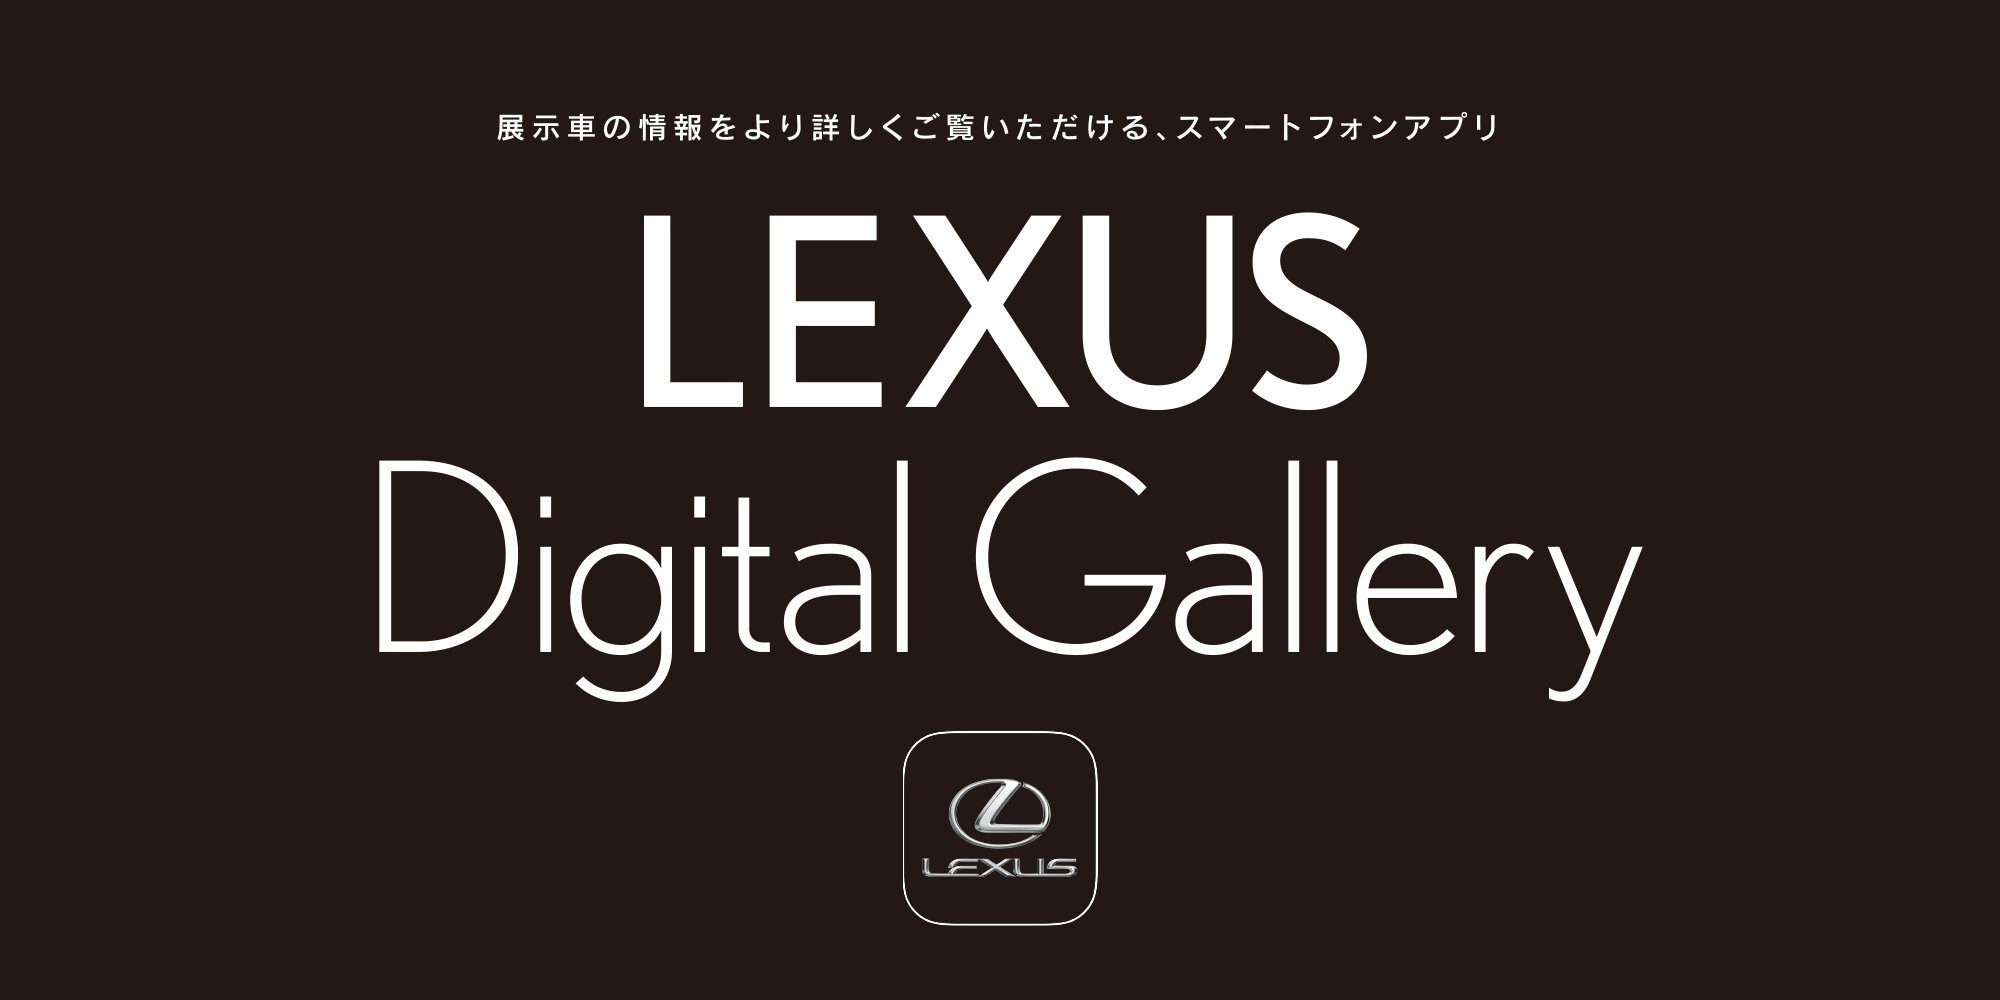 クルマ選び体験をサポートする レクサス車のデジタルショールーム Lexus Digital Gallery リニューアル 新たなクルマ選び体験を提供する新機能をリリース Lexus Pr事務局のプレスリリース